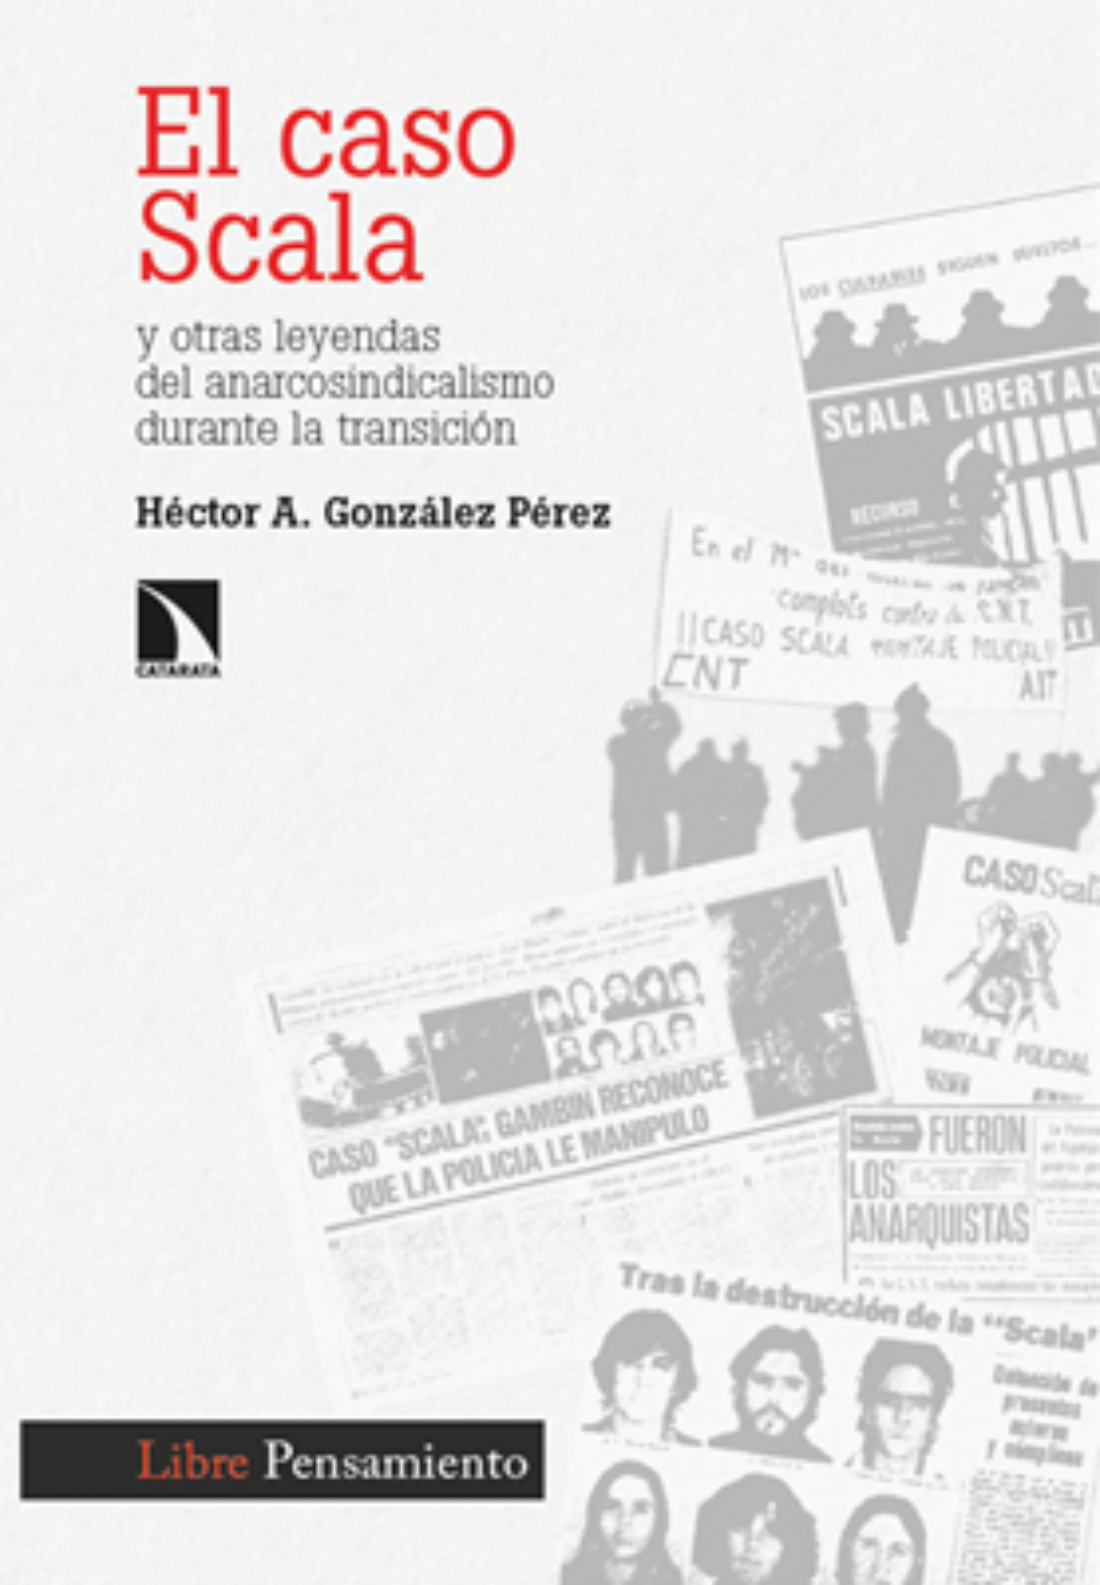 El caso Scala. Y otras leyendas del anarcosindicalismo en la transición